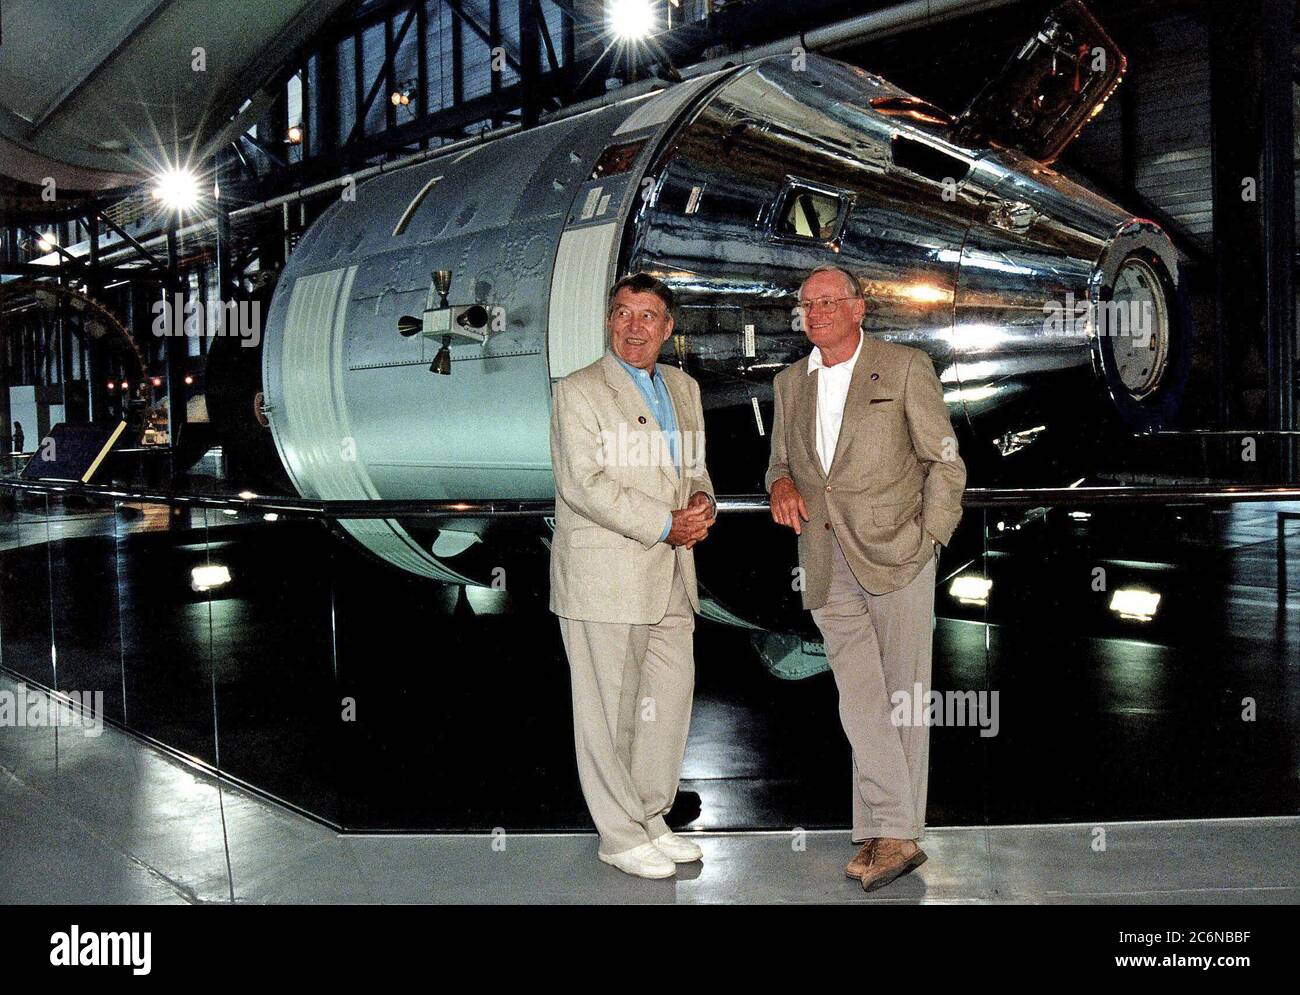 KENNEDY SPACE CENTER, FLA. Tra i tanti ospiti speciali del lancio della NASA STS-83 che hanno assistito al liftoff dello Space Shuttle Columbia 4 aprile sono stati il comandante dell'Apollo 7 Walter M. 'Wally' Schirra (a sinistra) e il comandante dell'Apollo l1 Neil A. Armstrong. I due ex astronauti si trovano davanti al modulo di comando e di servizio Apollo nel Centro Apollo/Saturno V del KSC. Columbia decolli dal Launch Pad 39A alle 14:20:32 EST per iniziare la missione di 16 giorni del Microcitity Science Laboratory-1 (MSL-1) Foto Stock